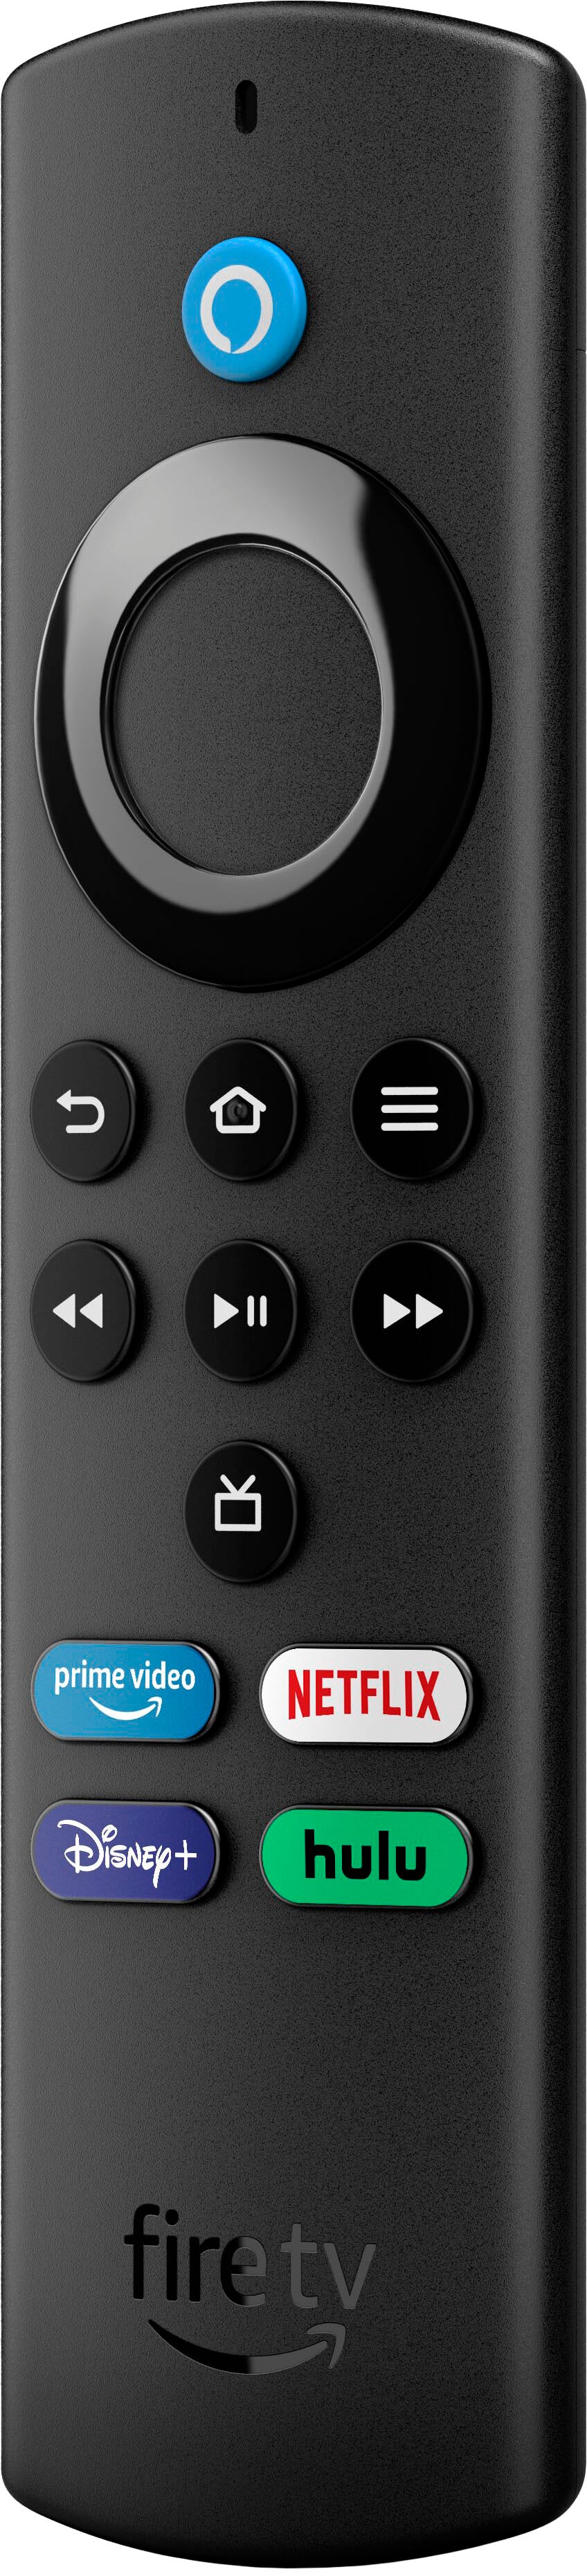 (5) Amazon Fire TV Stick Lite (2021) + Smart Plug + Cat5 Cable + Batteries